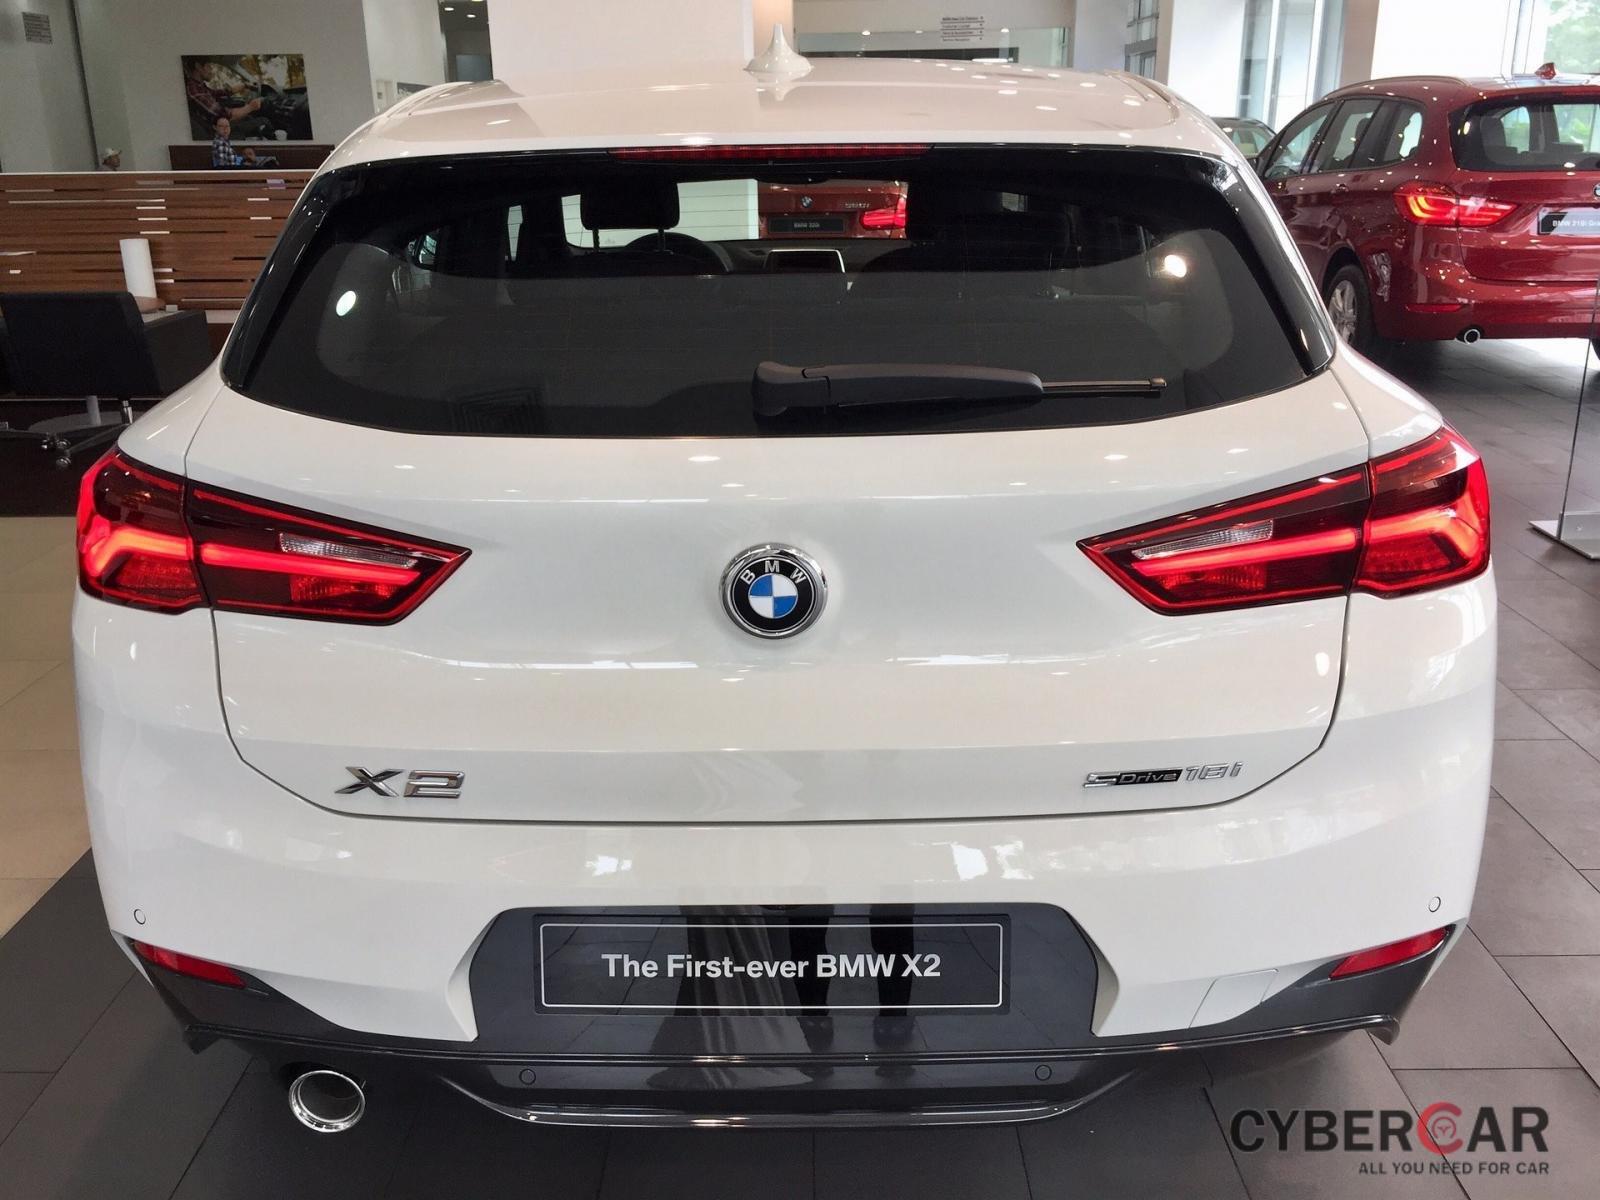 Giá lăn bánh BMW X2 2019 với phiên bản giá rẻ hơn mới ra mắt - Ảnh 1.